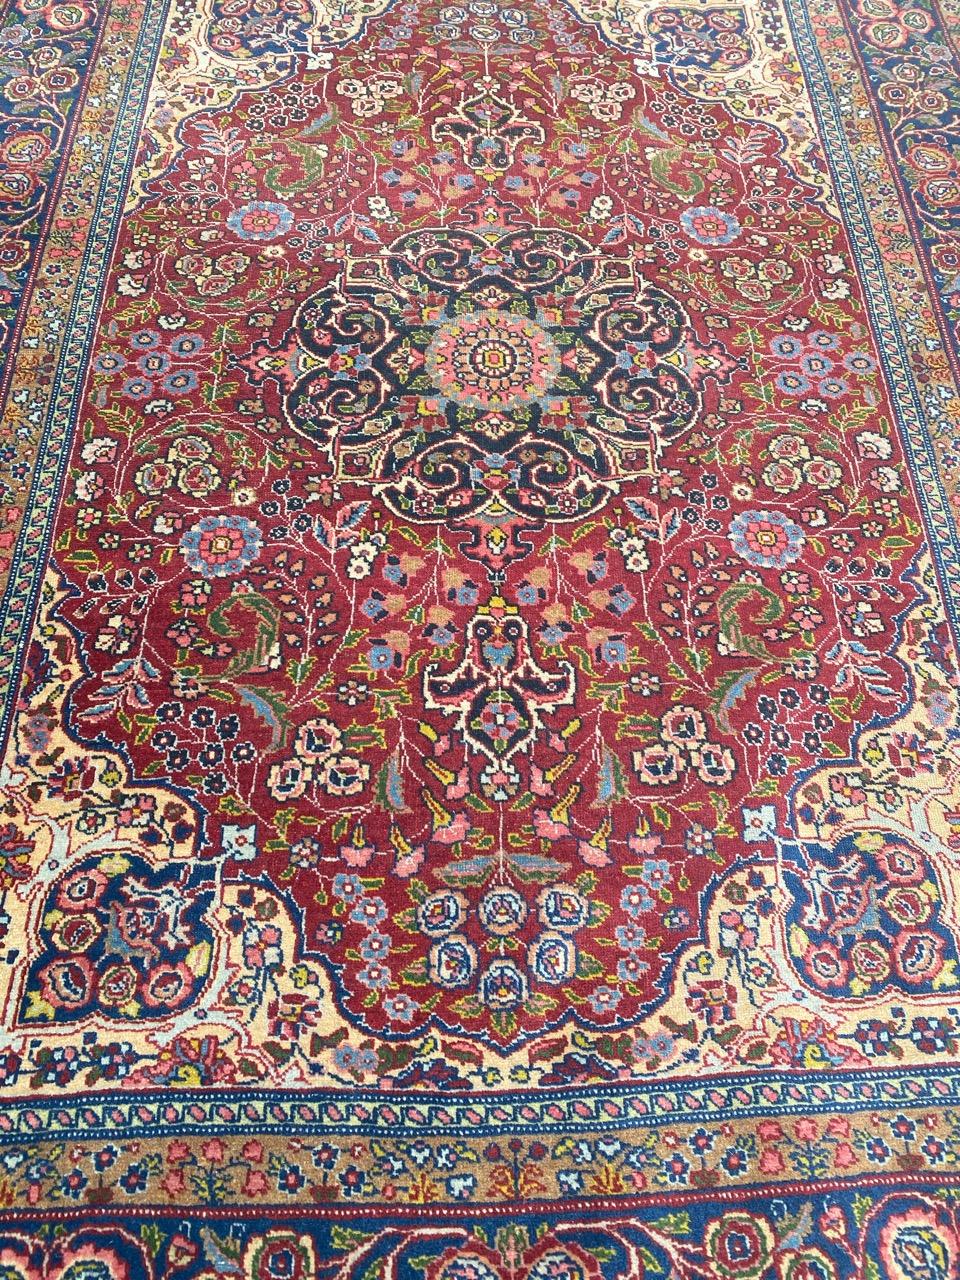 Sehr hübscher Täbriz-Teppich aus dem späten 19. Jahrhundert mit schönem floralem Medaillon-Muster in der Mitte und schönen natürlichen Farben, vollständig und fein handgeknüpft mit Wollsamt auf Baumwollgrund.

✨✨✨
